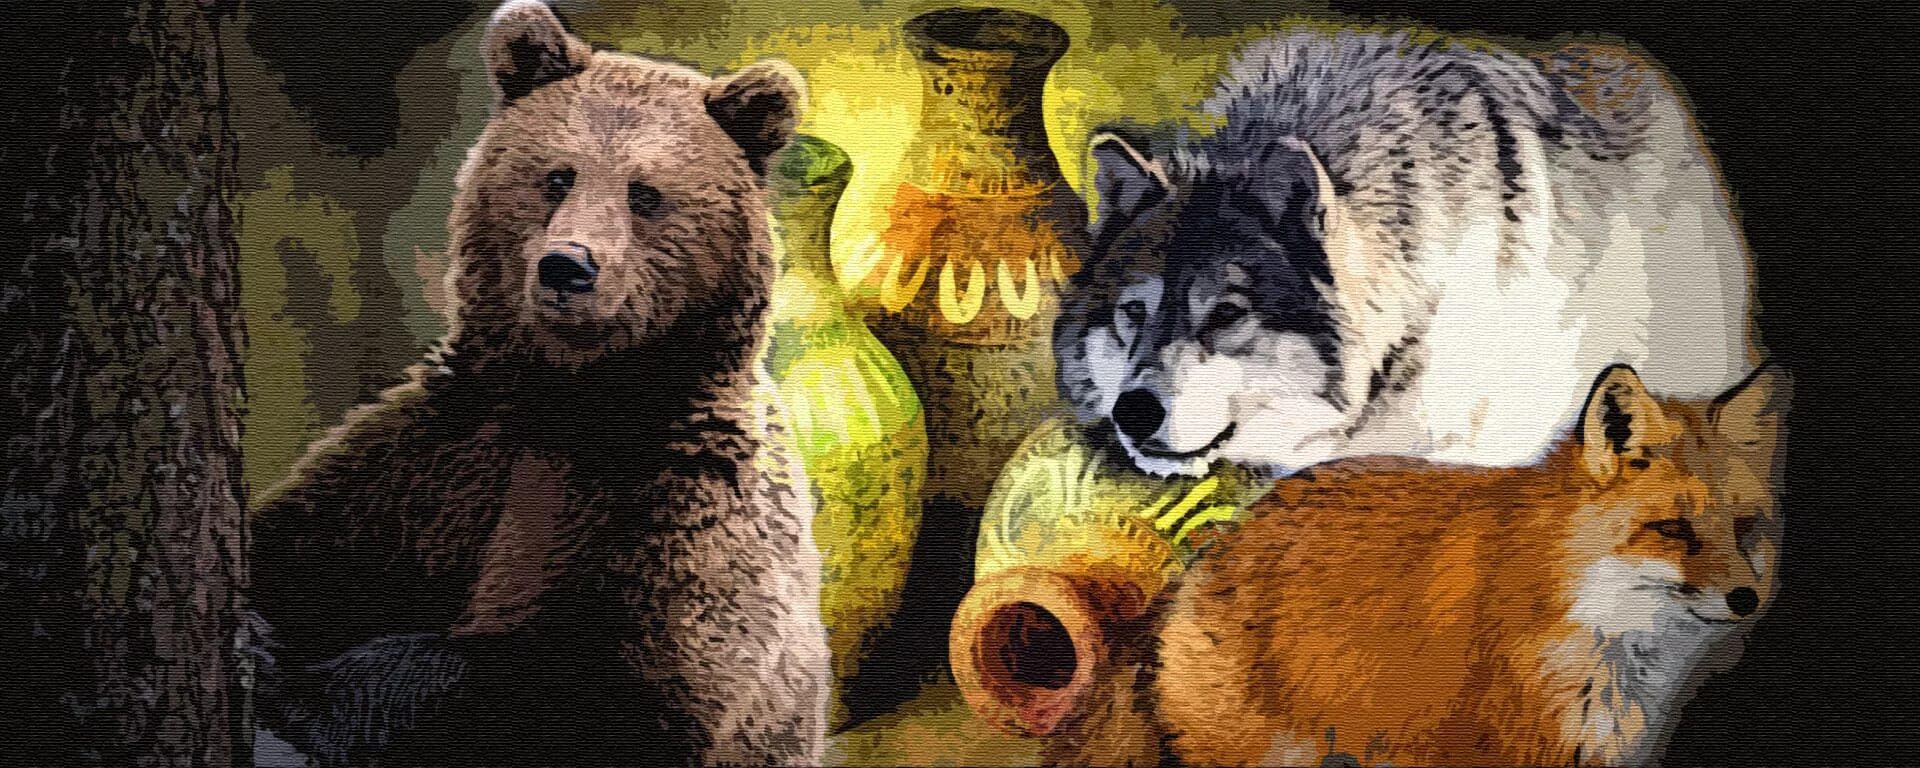 Картинка волк лиса медведь